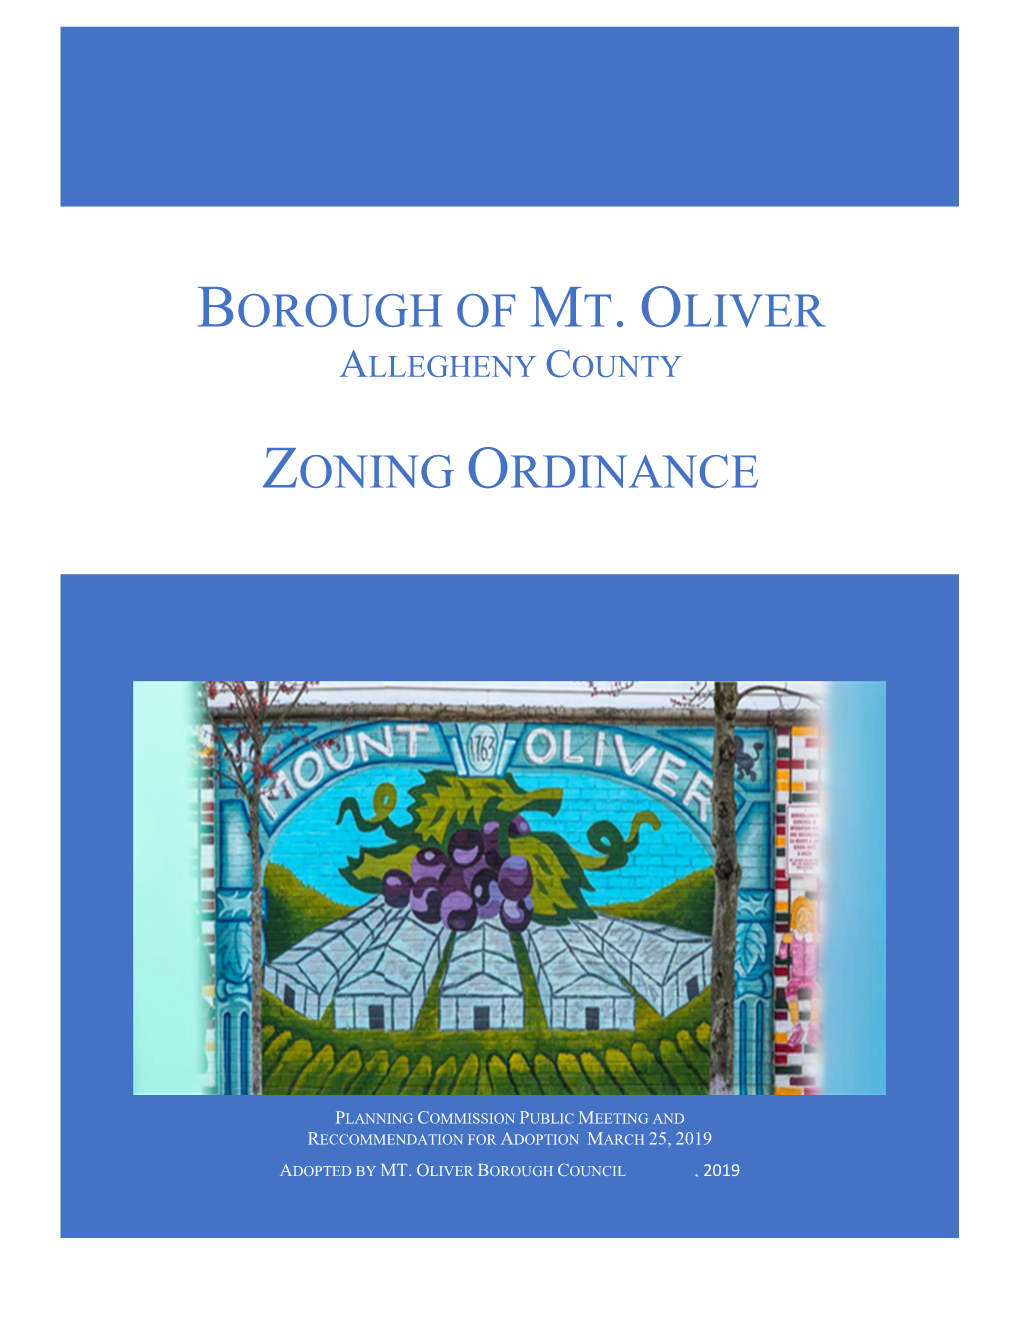 Borough of Mt. Oliver Zoning Ordinance